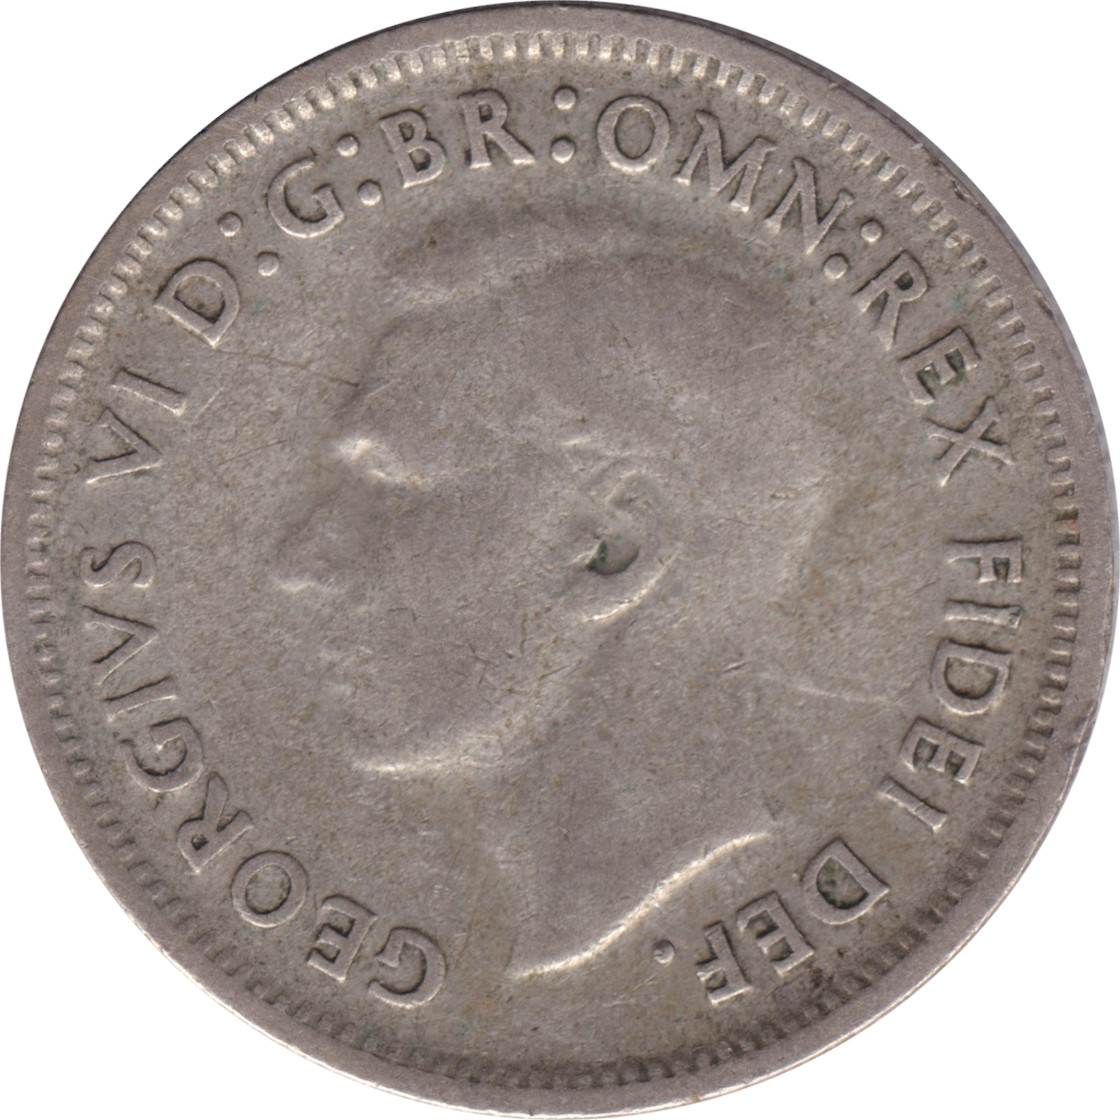 1 shilling - George VI